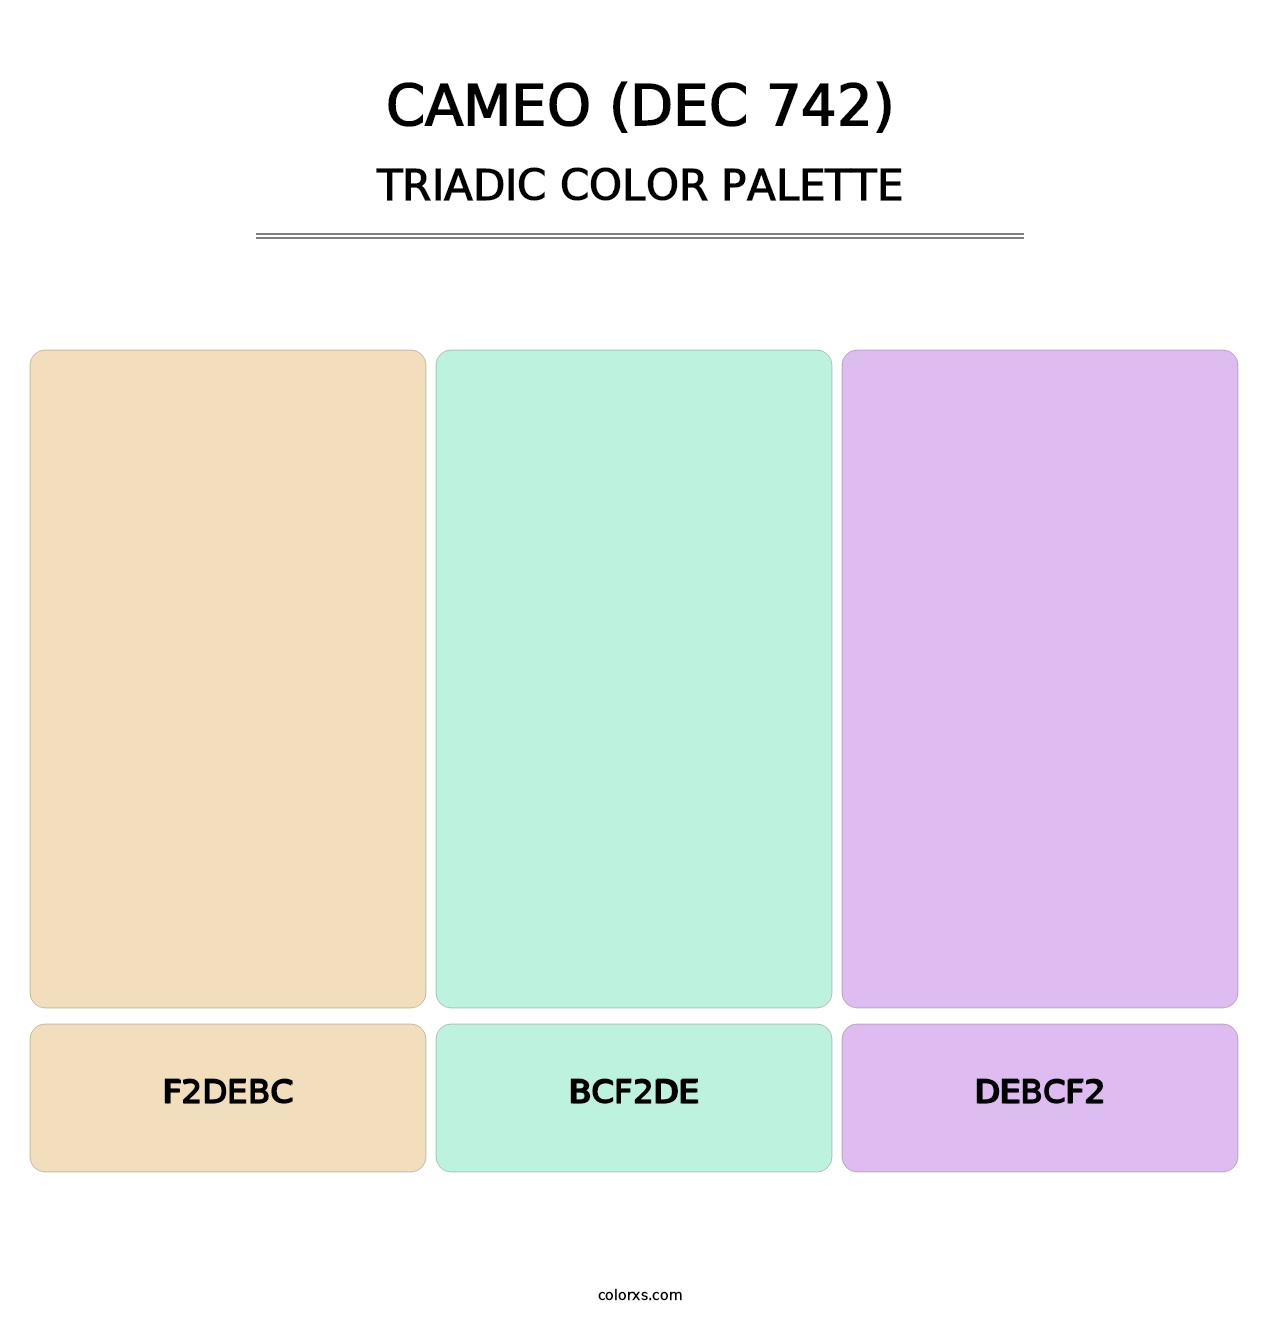 Cameo (DEC 742) - Triadic Color Palette